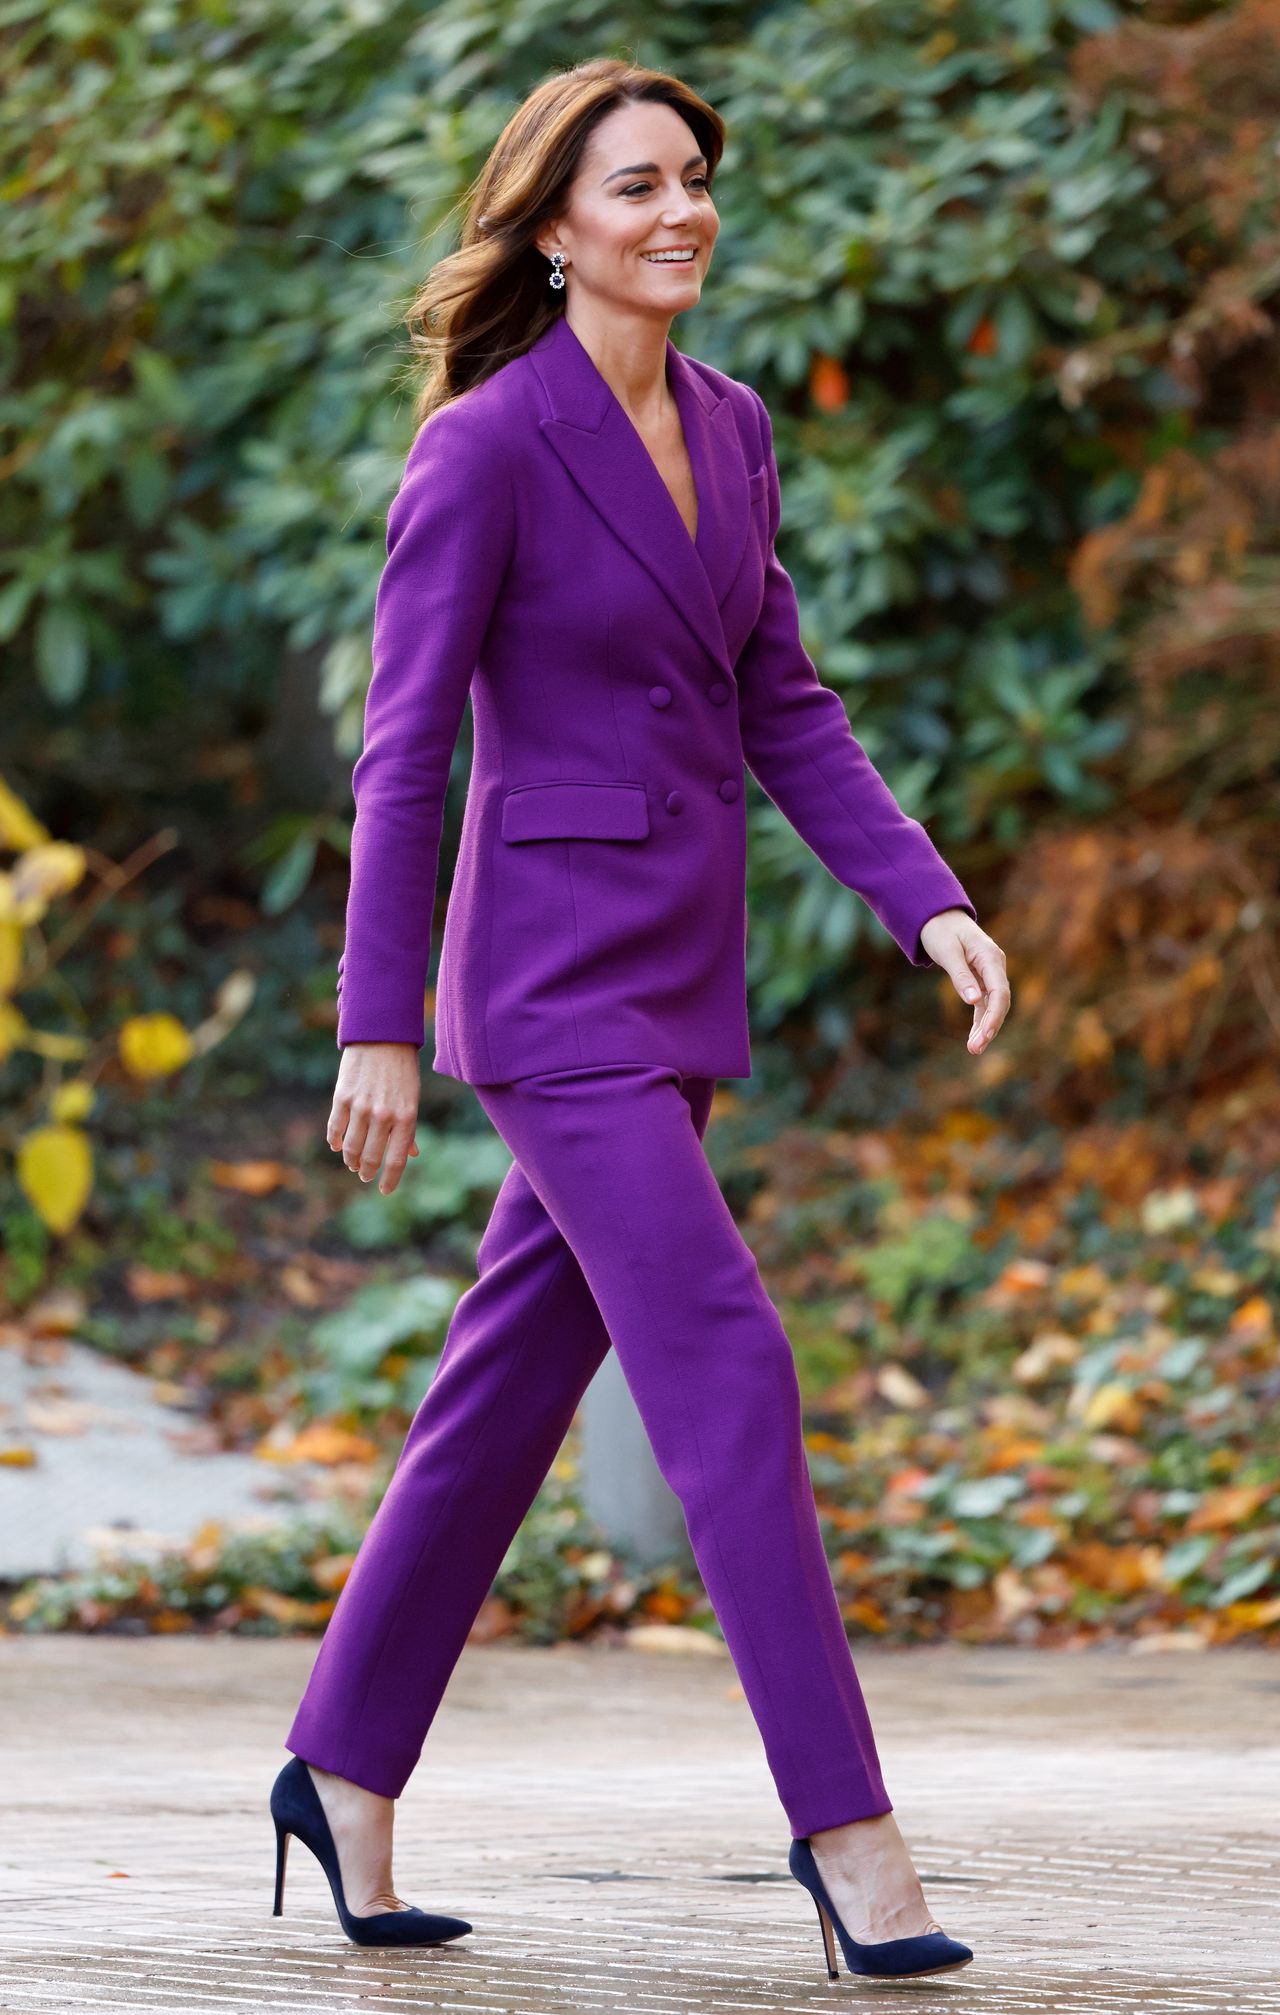 Księżna Kate również postawiła na fioletowy garnitur 